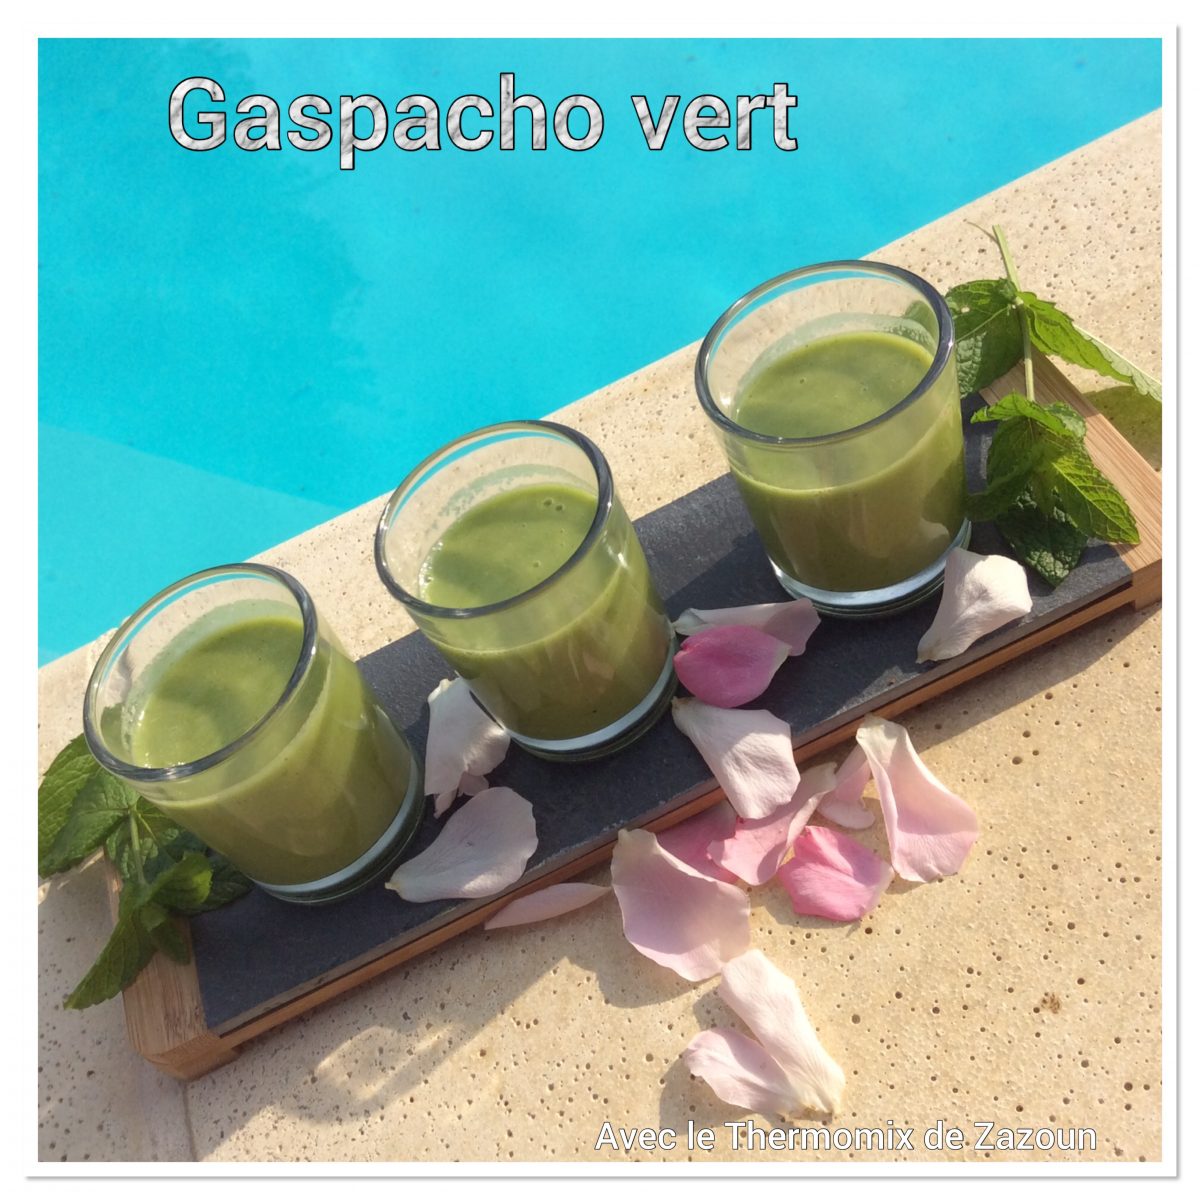 Gaspacho vert, concombre, courgettes…Thermomix, blender et autres robots sans gluten ni lait